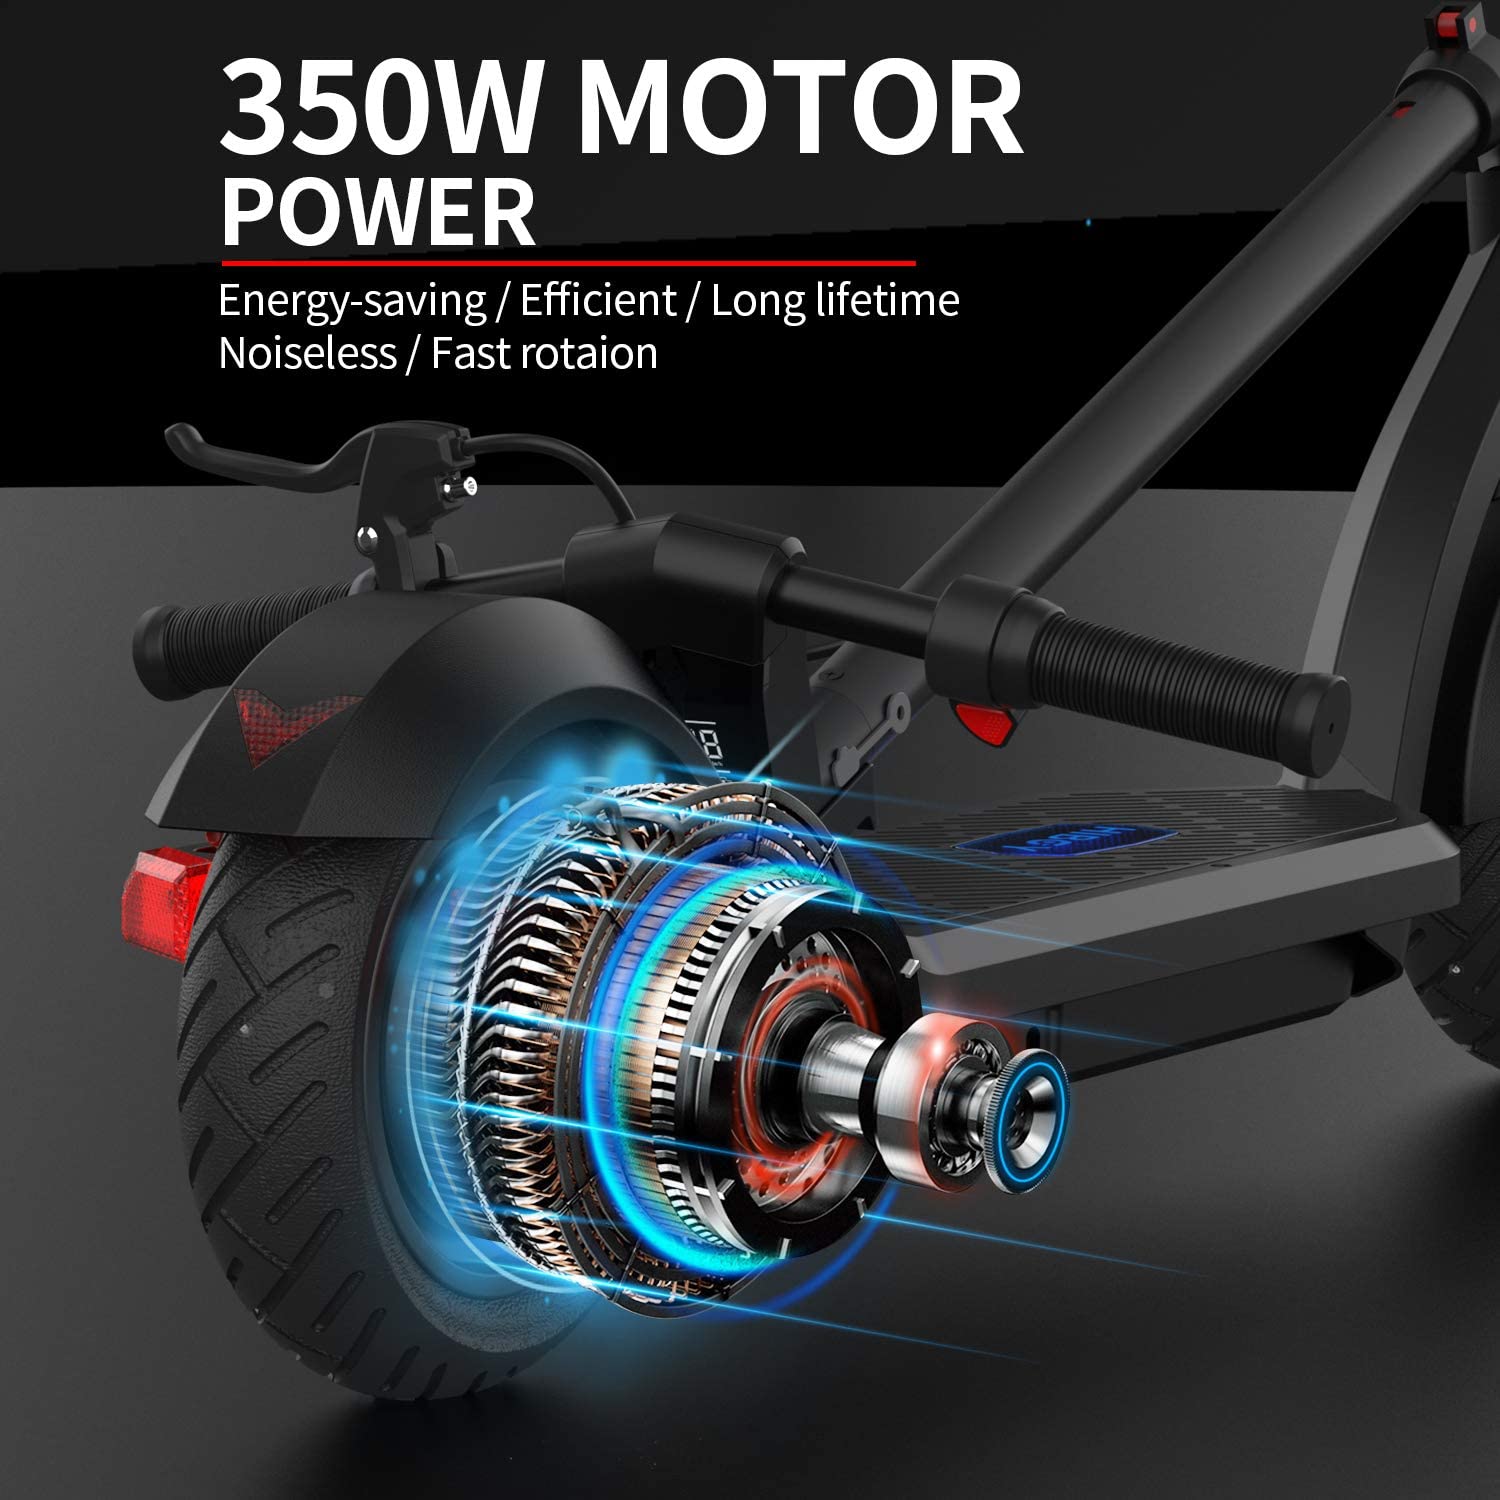 Hiboy Max 3 motor power